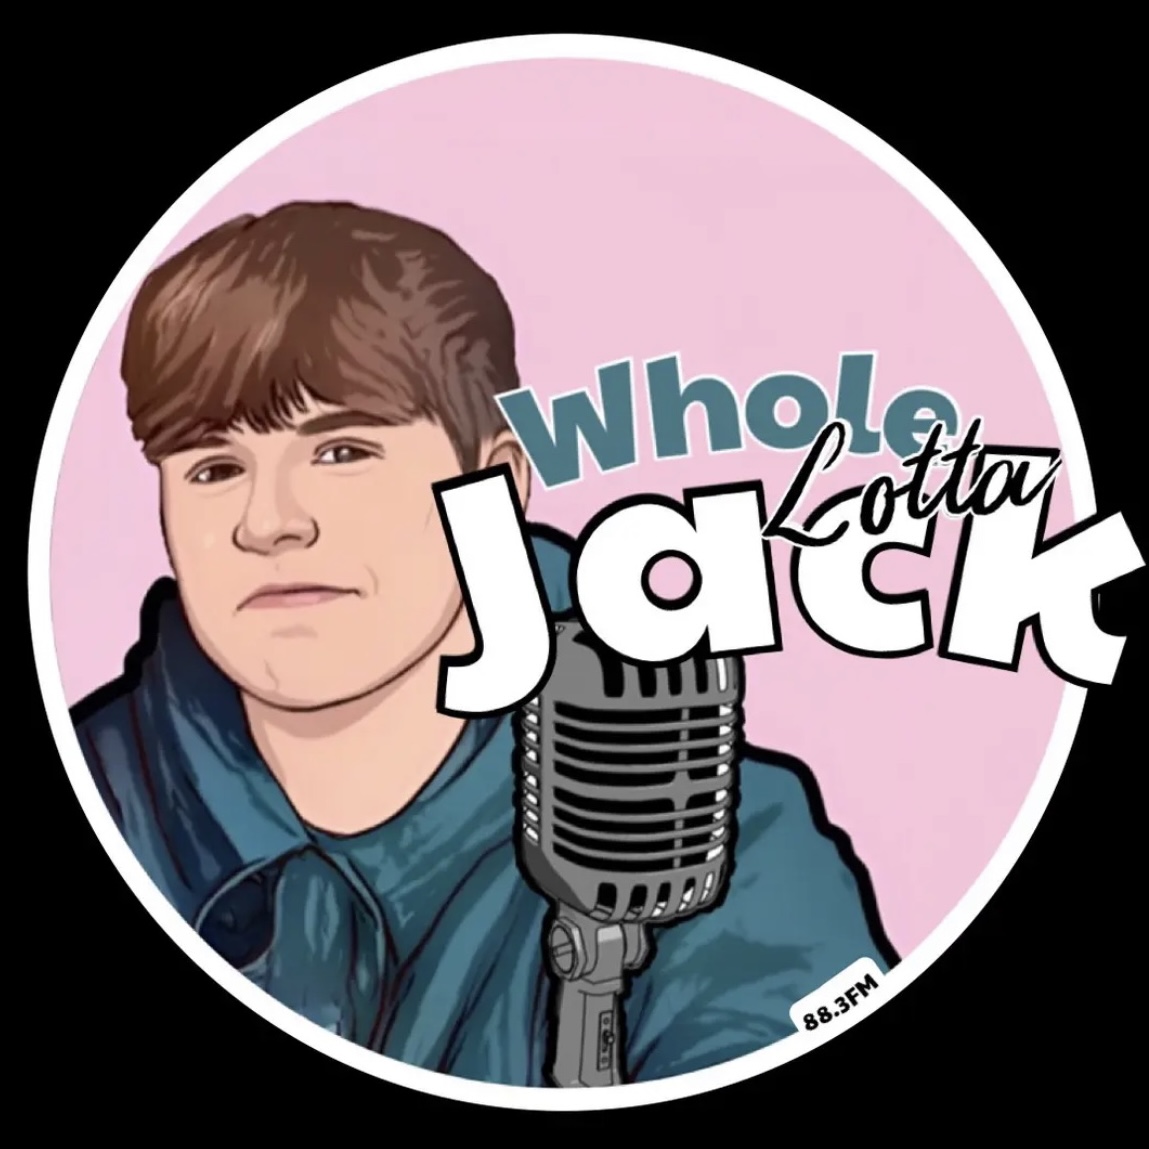 Whole Lotta’ Jack Logo